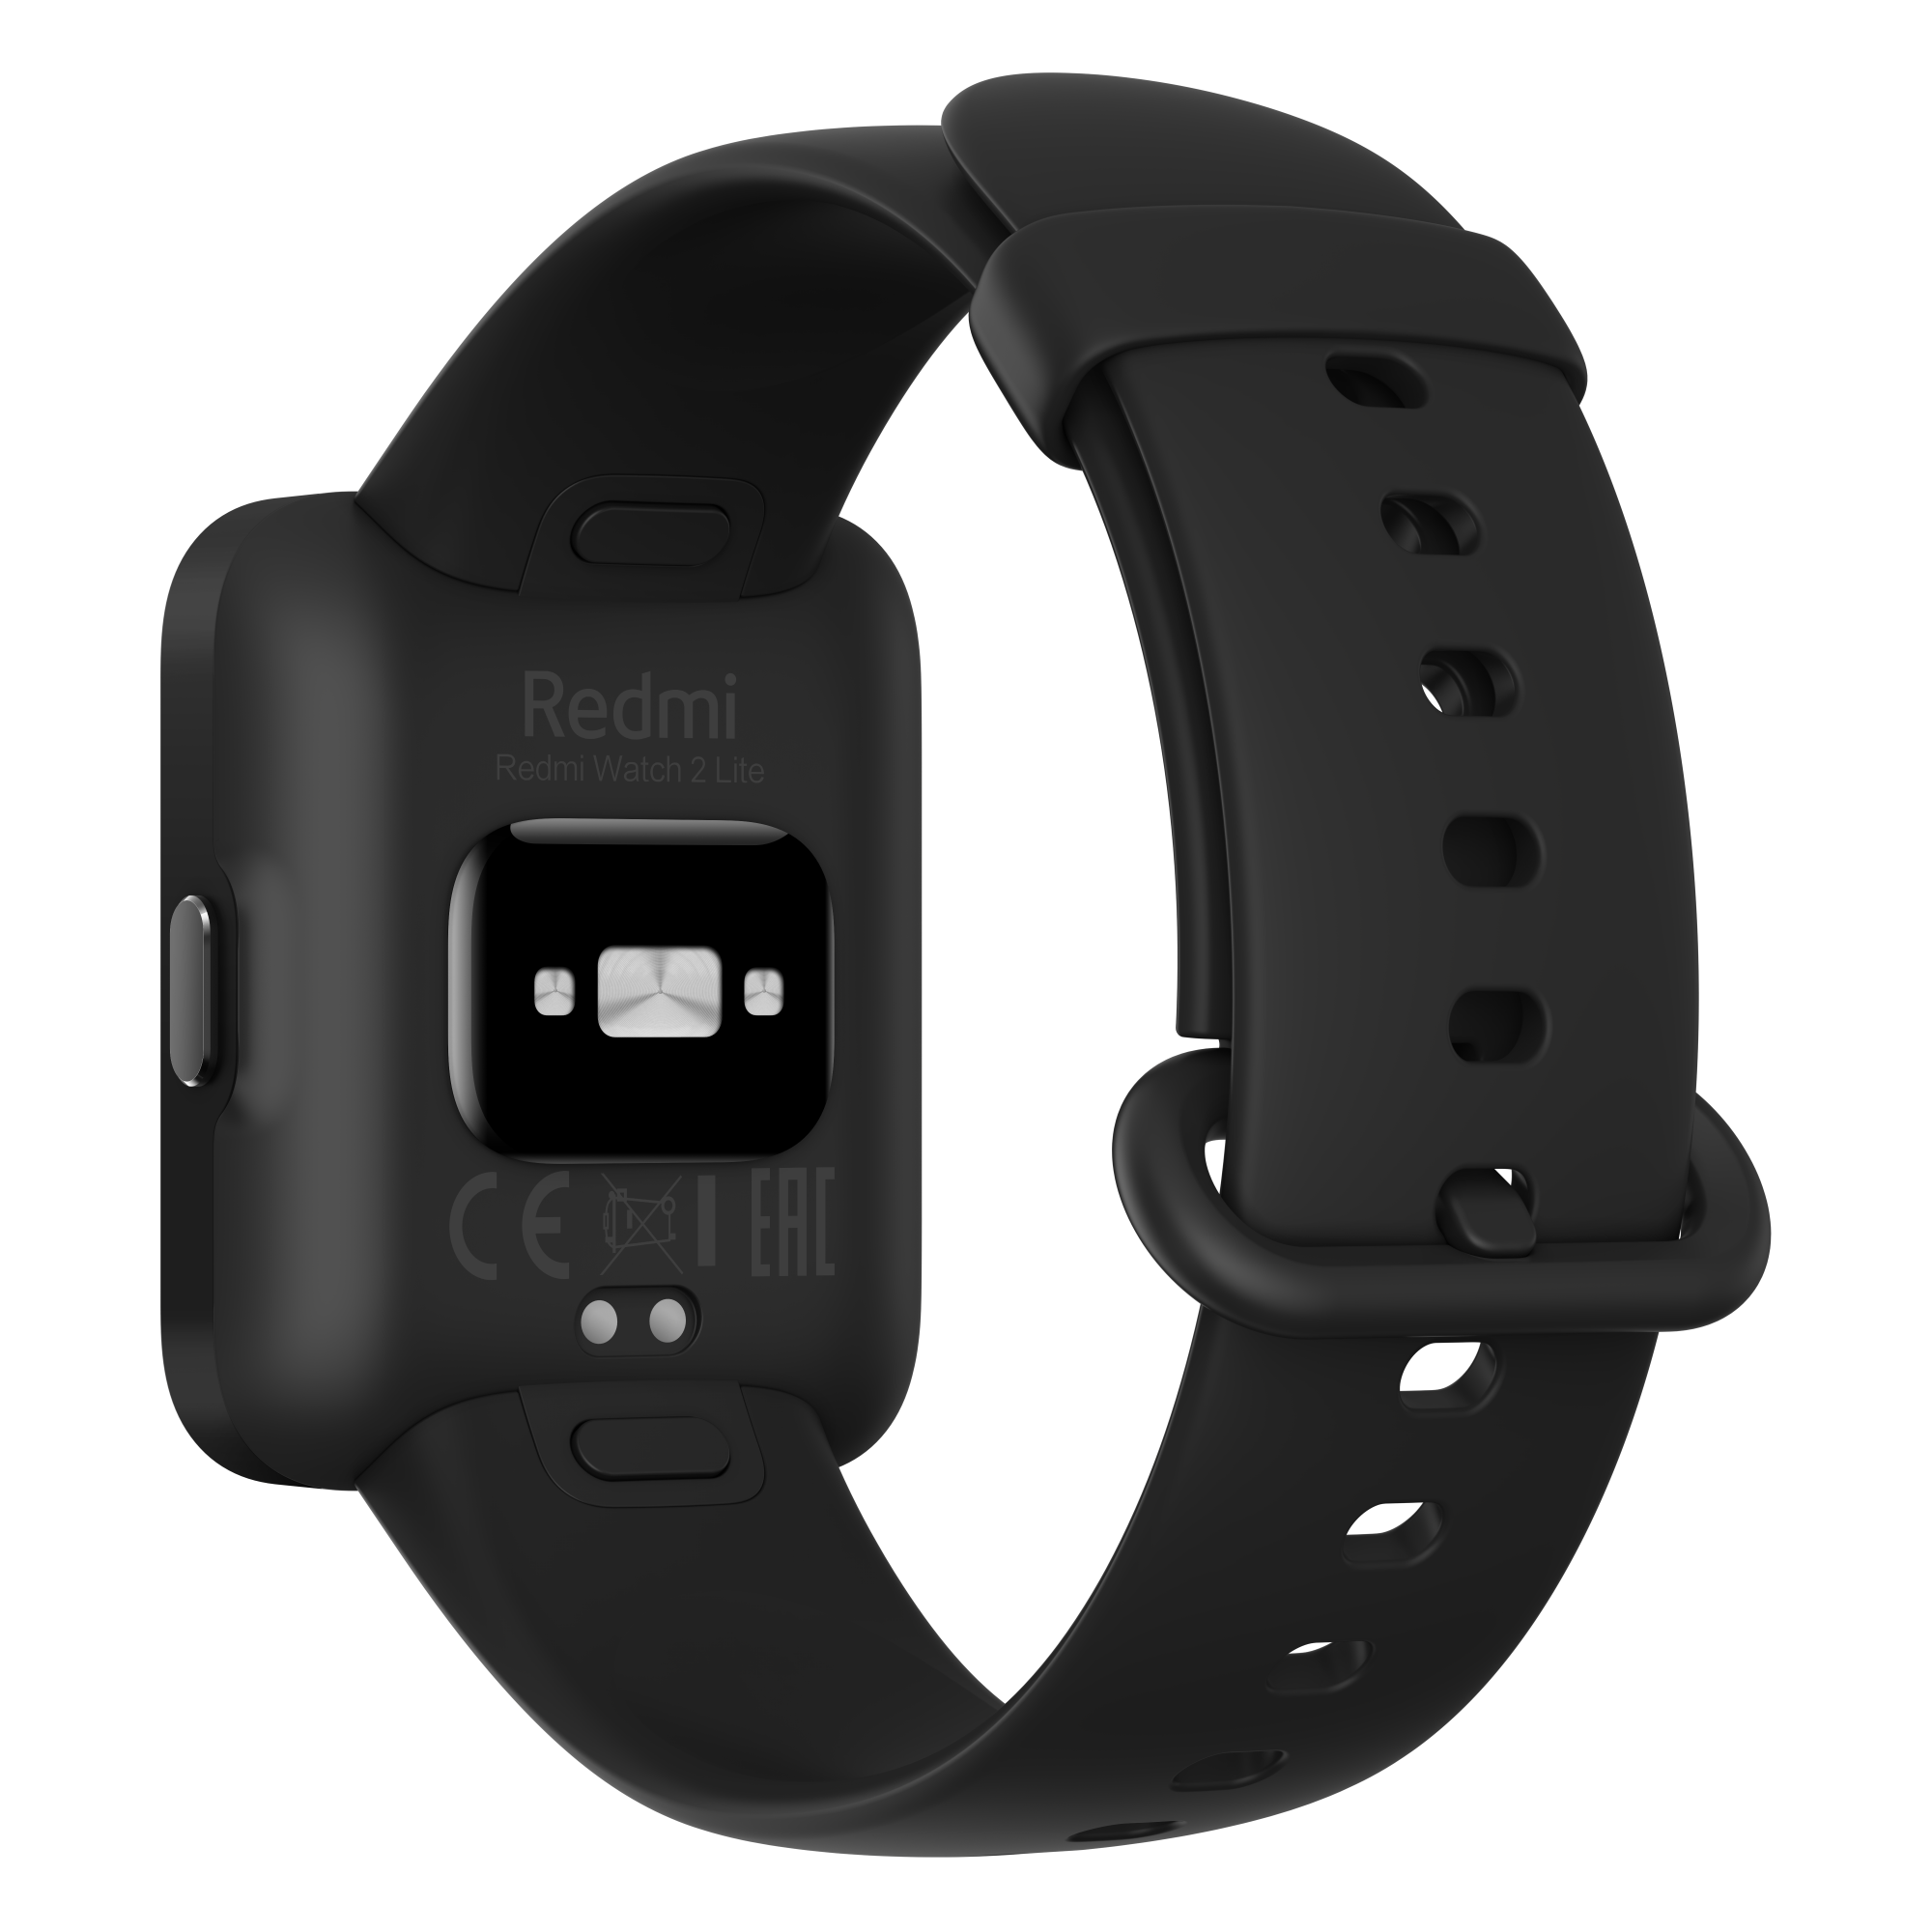 Pametni sat Xiaomi Mi Watch 2 Lite Black